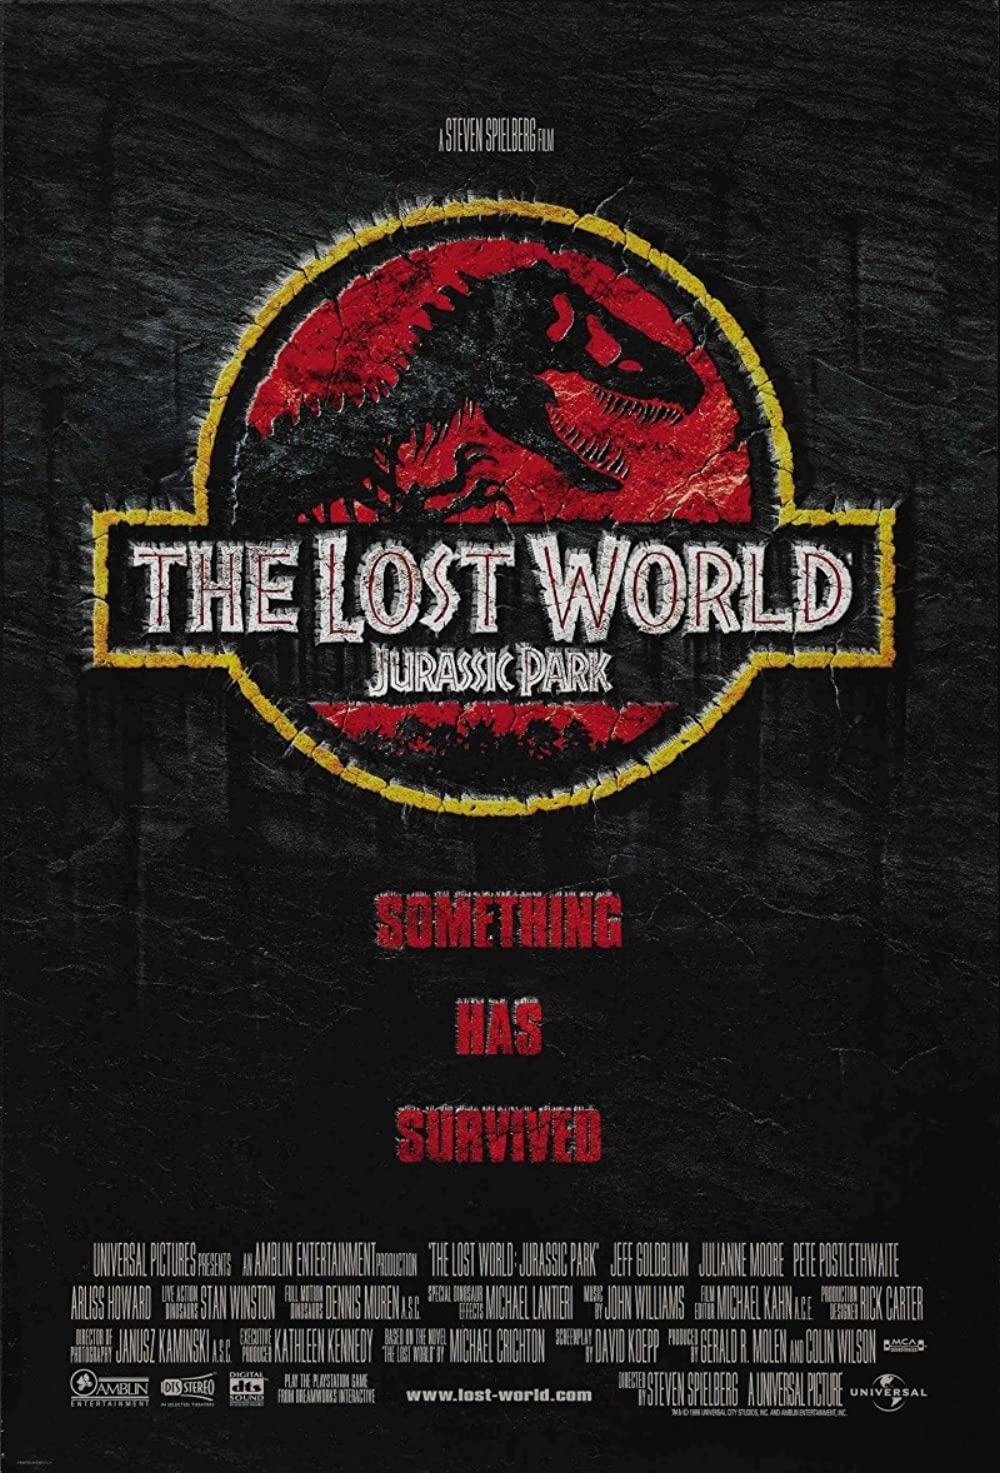 Filmbeschreibung zu The Lost World